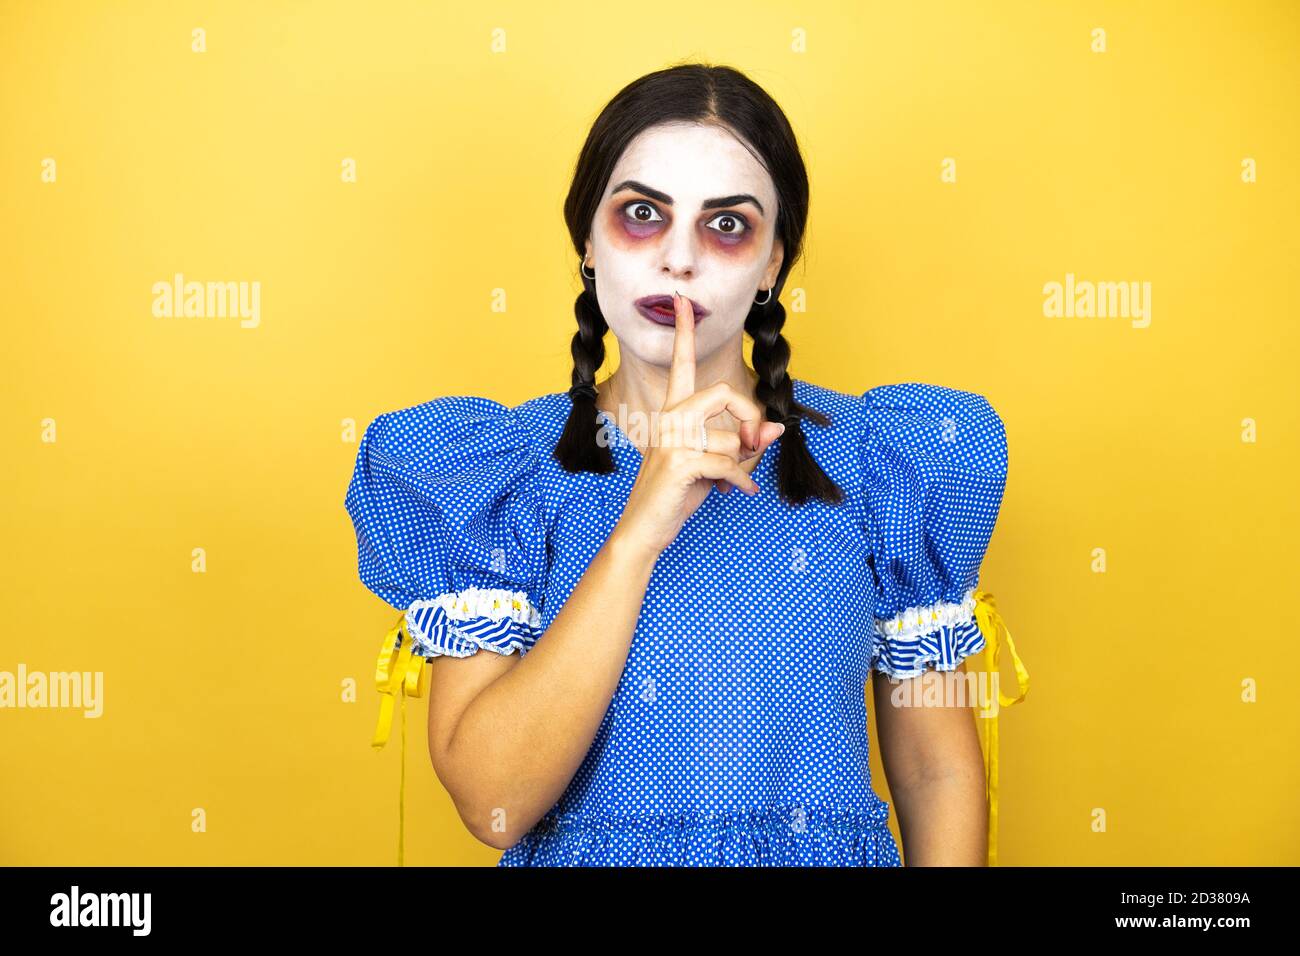 femme portant une poupée effrayante costume d'halloween sur fond jaune demandant à être calme avec le doigt sur les lèvres. Silence et concept secret. Banque D'Images